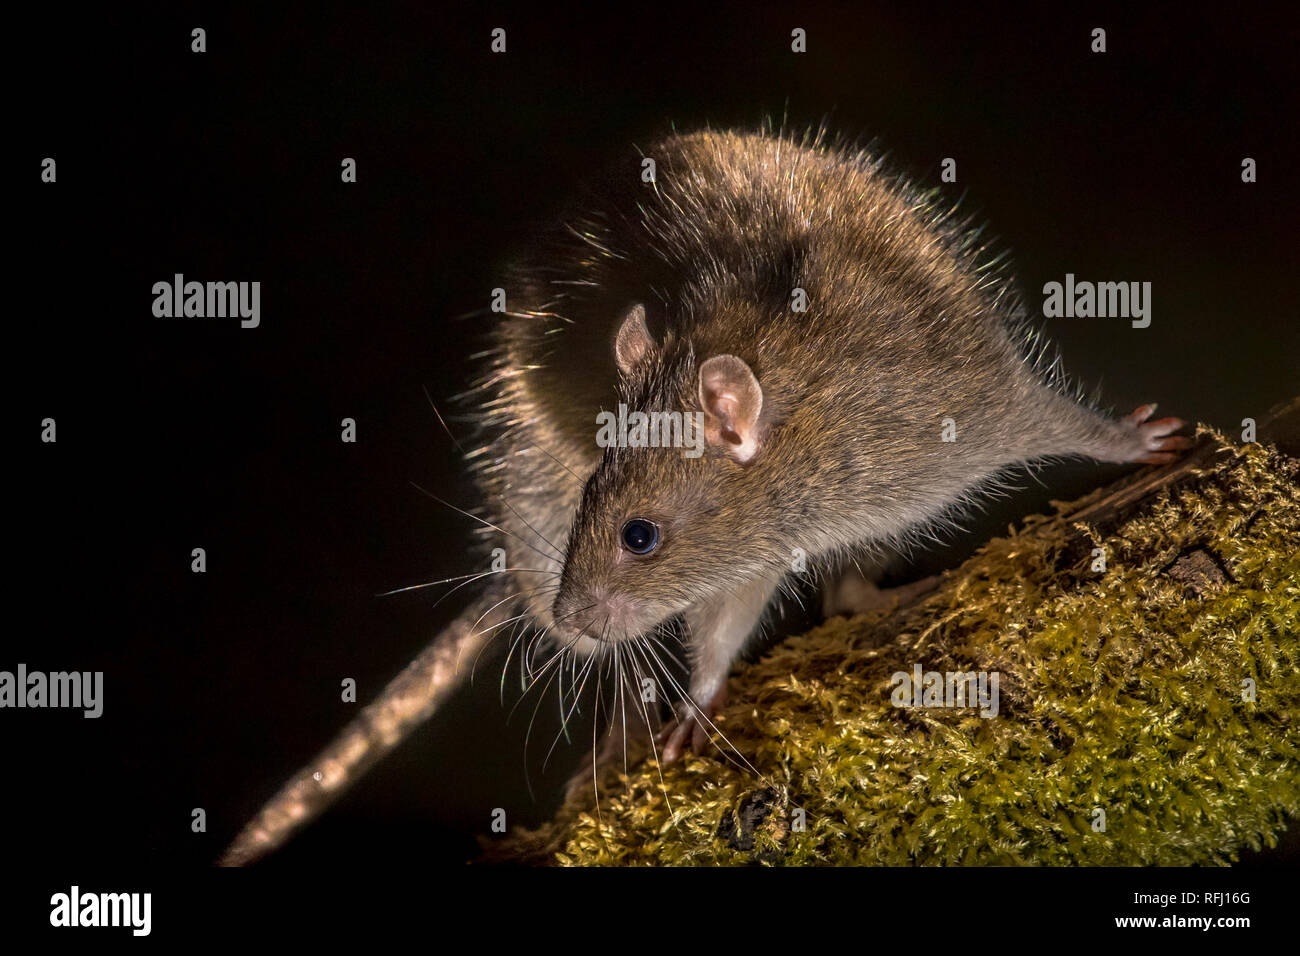 Wild marrone (ratto Rattus norvegicus) girando sul log di notte. Fotografie ad alta velocità immagine Foto Stock